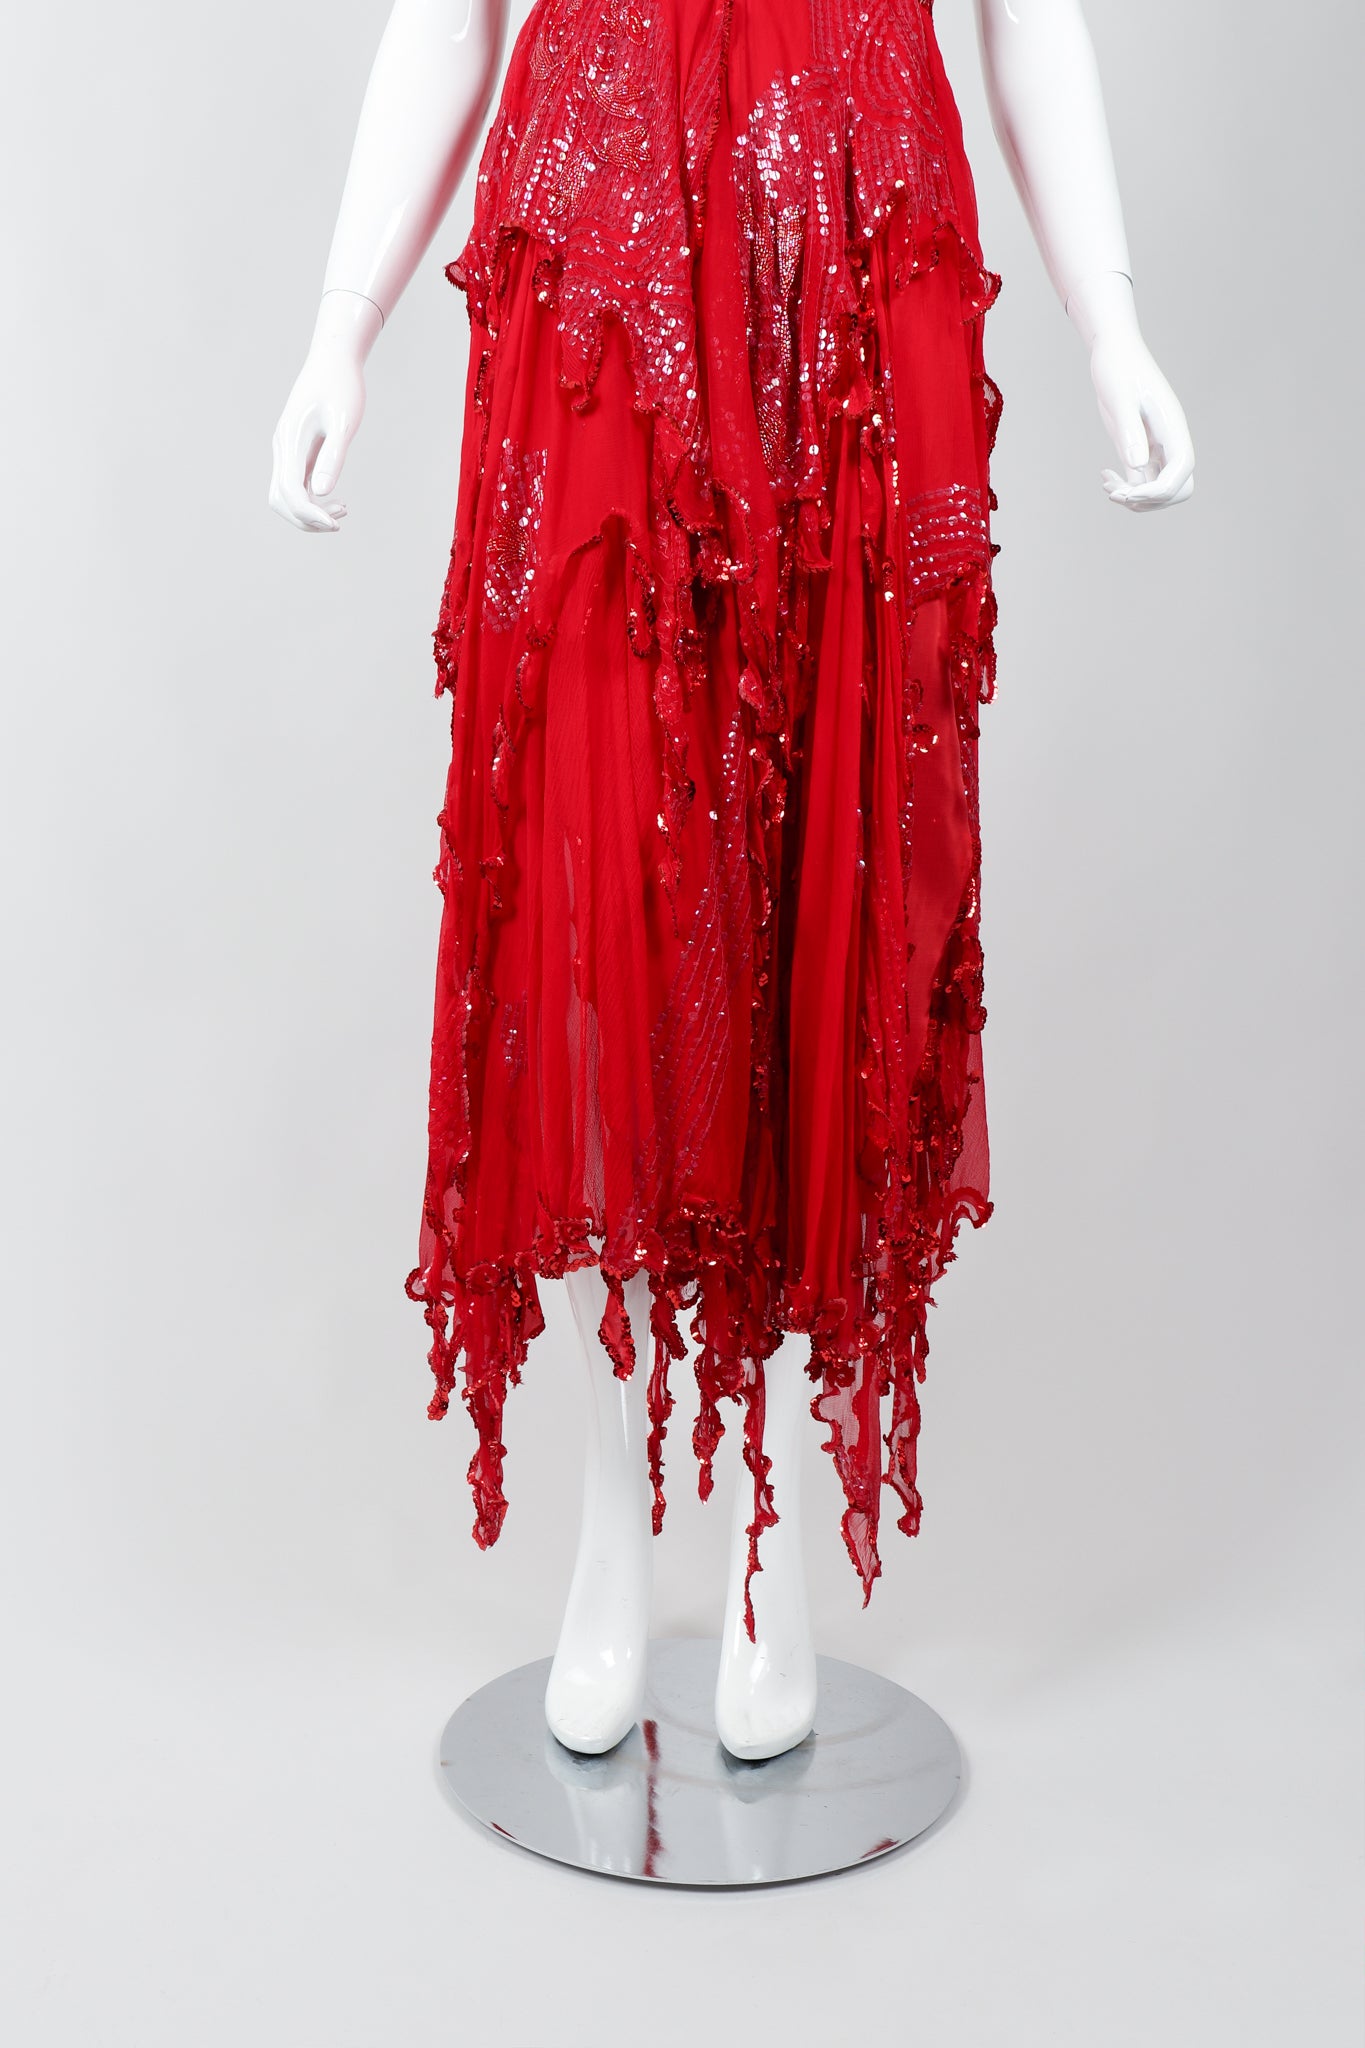 Vintage Carole Lee Red Flutter Halter Dance Dress on Mannequin skirt at Recess Los Angeles